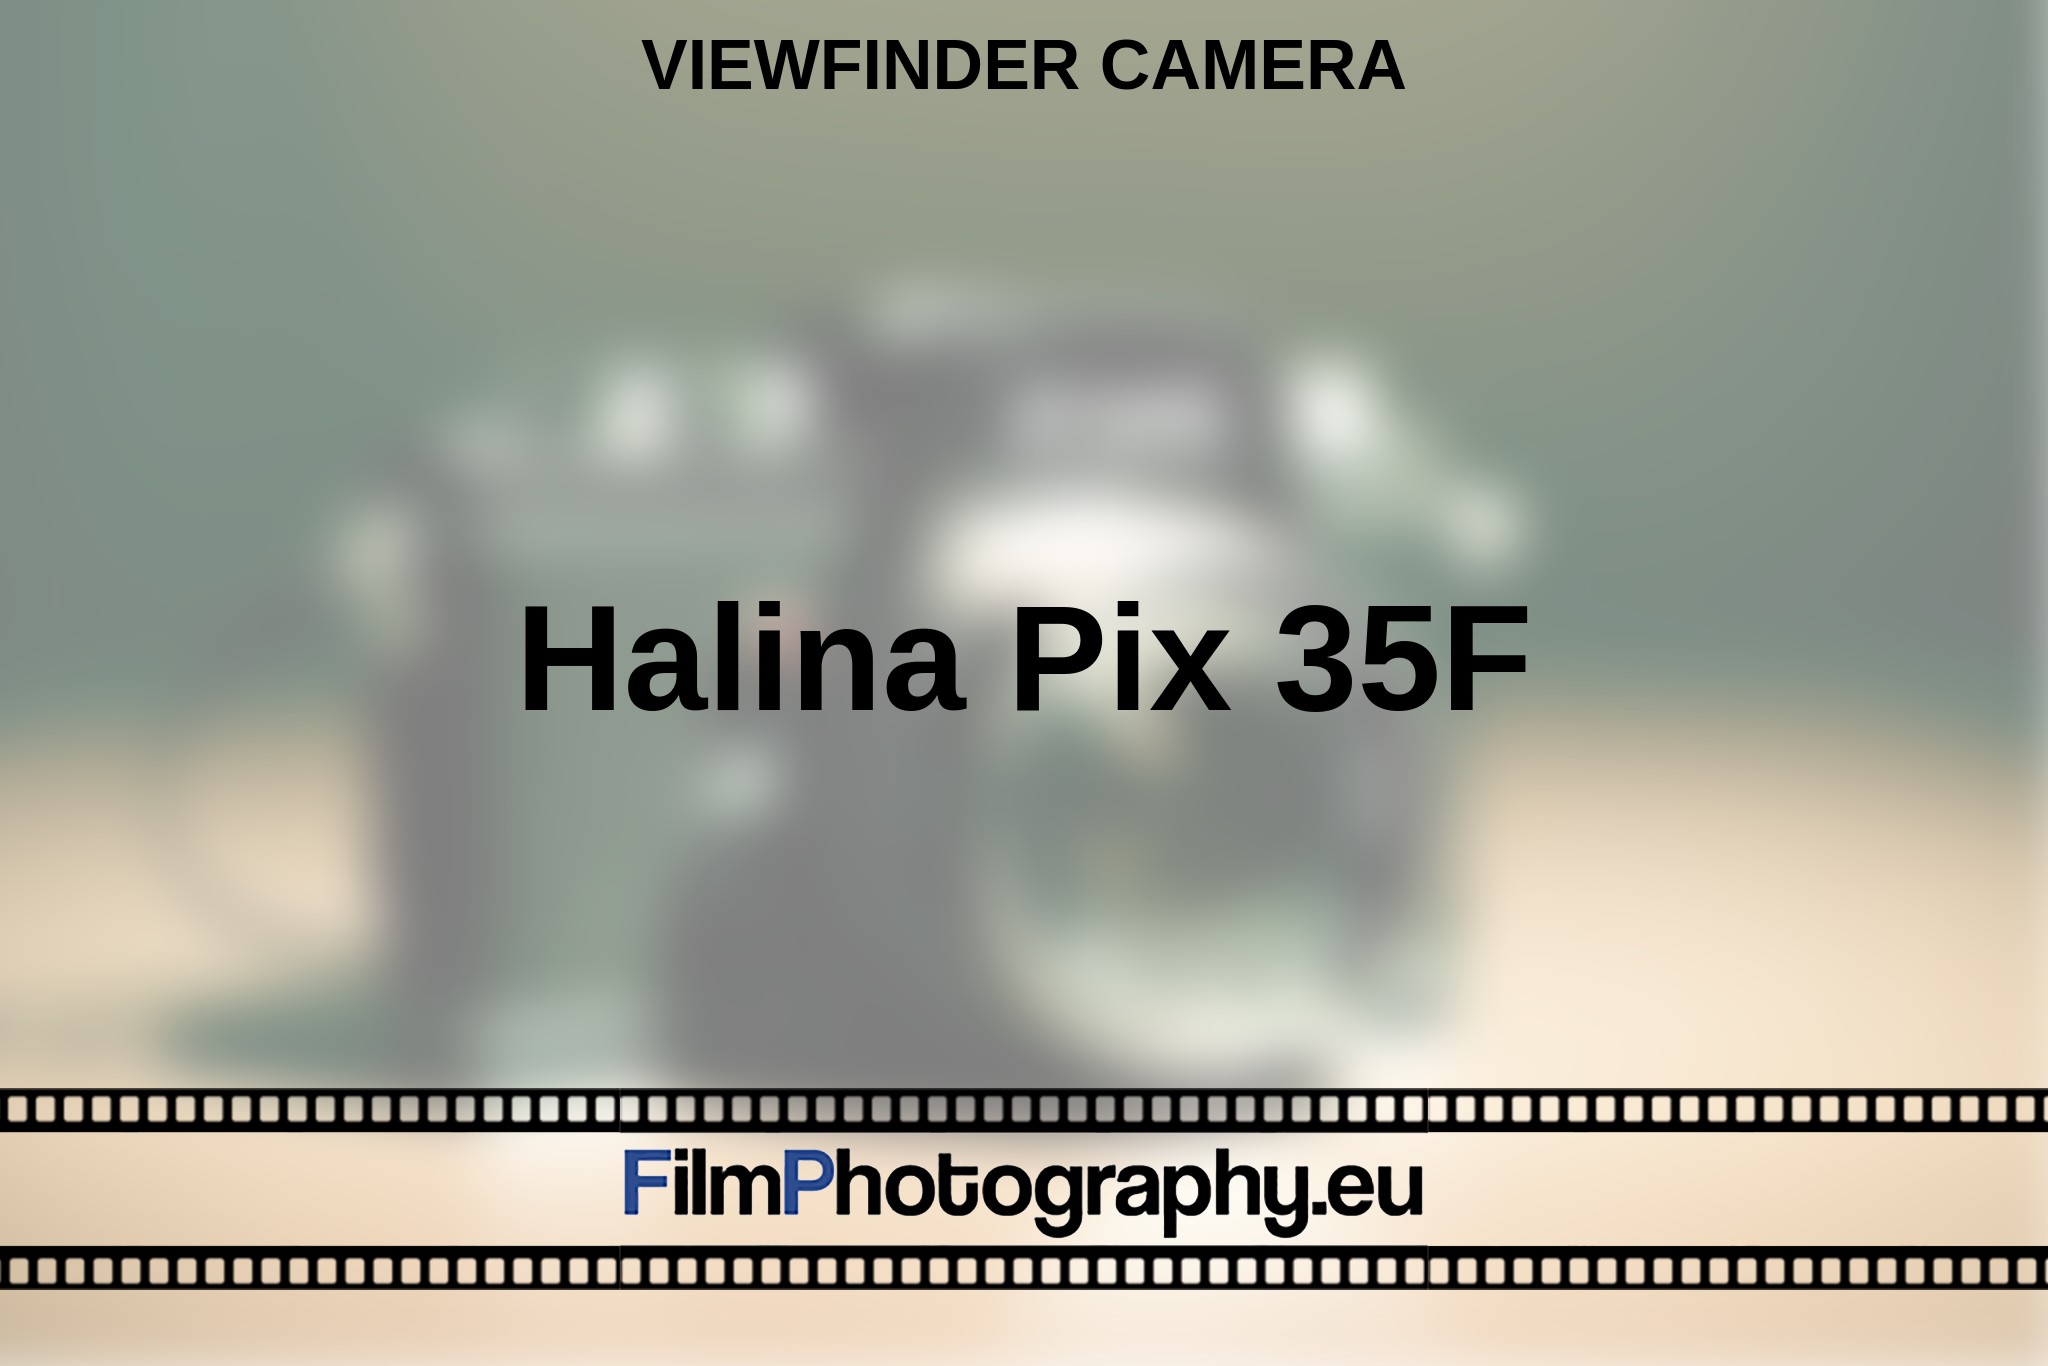 halina-pix-35f-viewfinder-camera-en-bnv.jpg